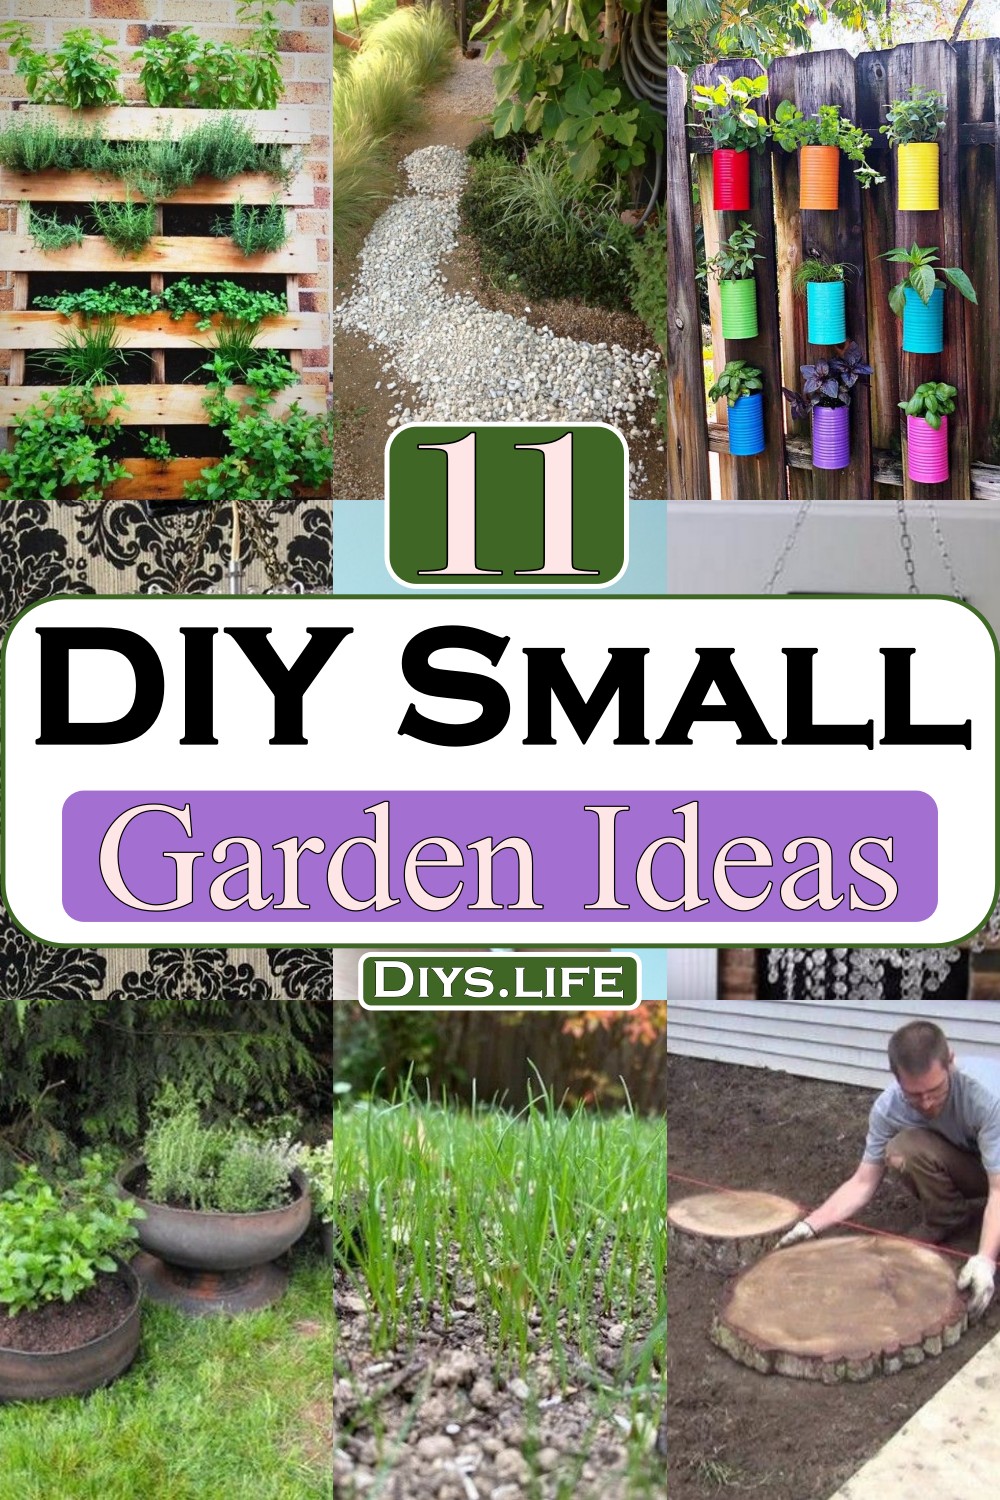 DIY Small Garden Ideas